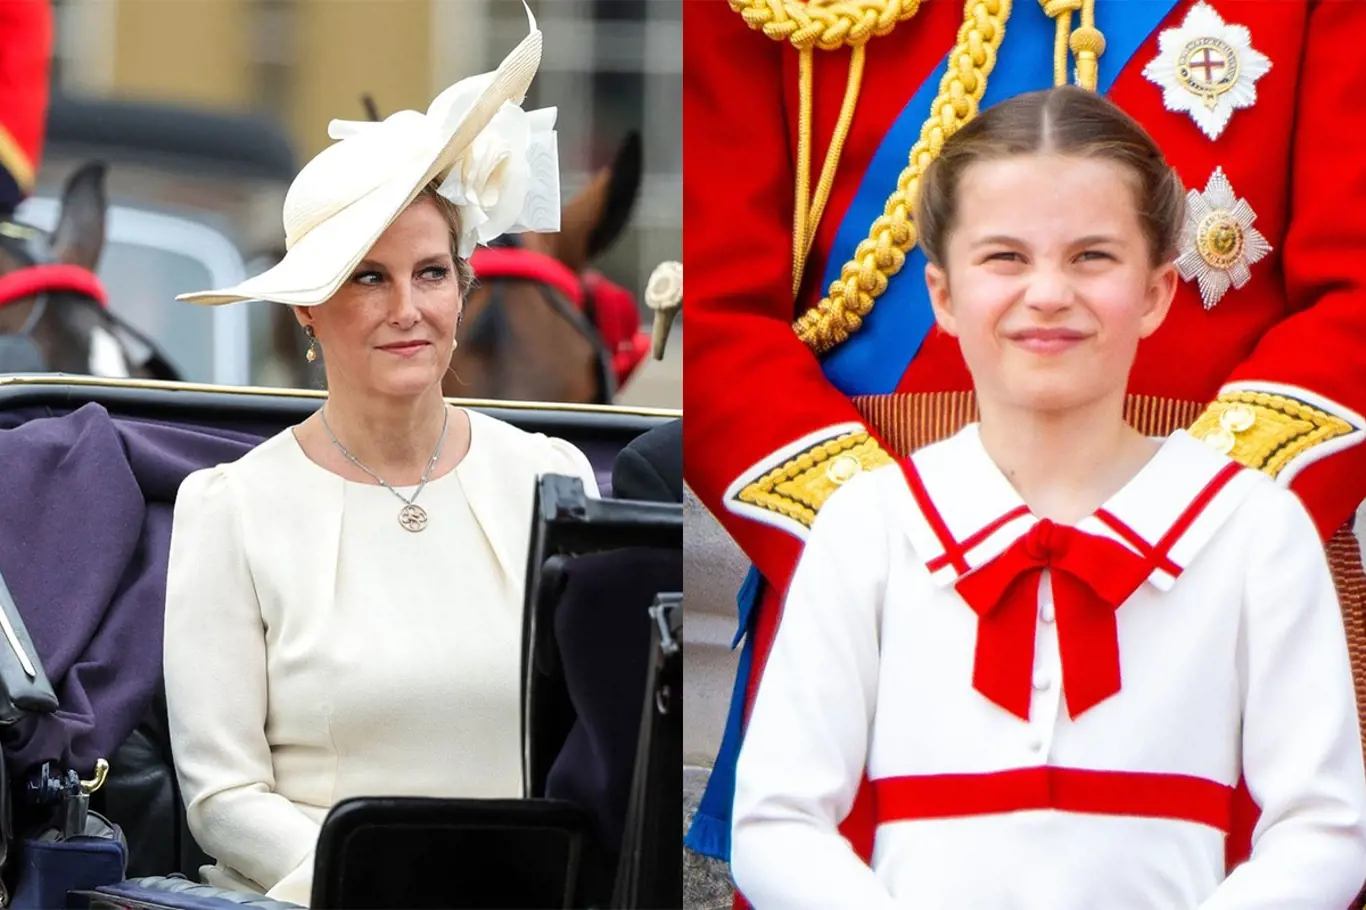 Vévodkyně z Edinburghu a princezna Charlotte.